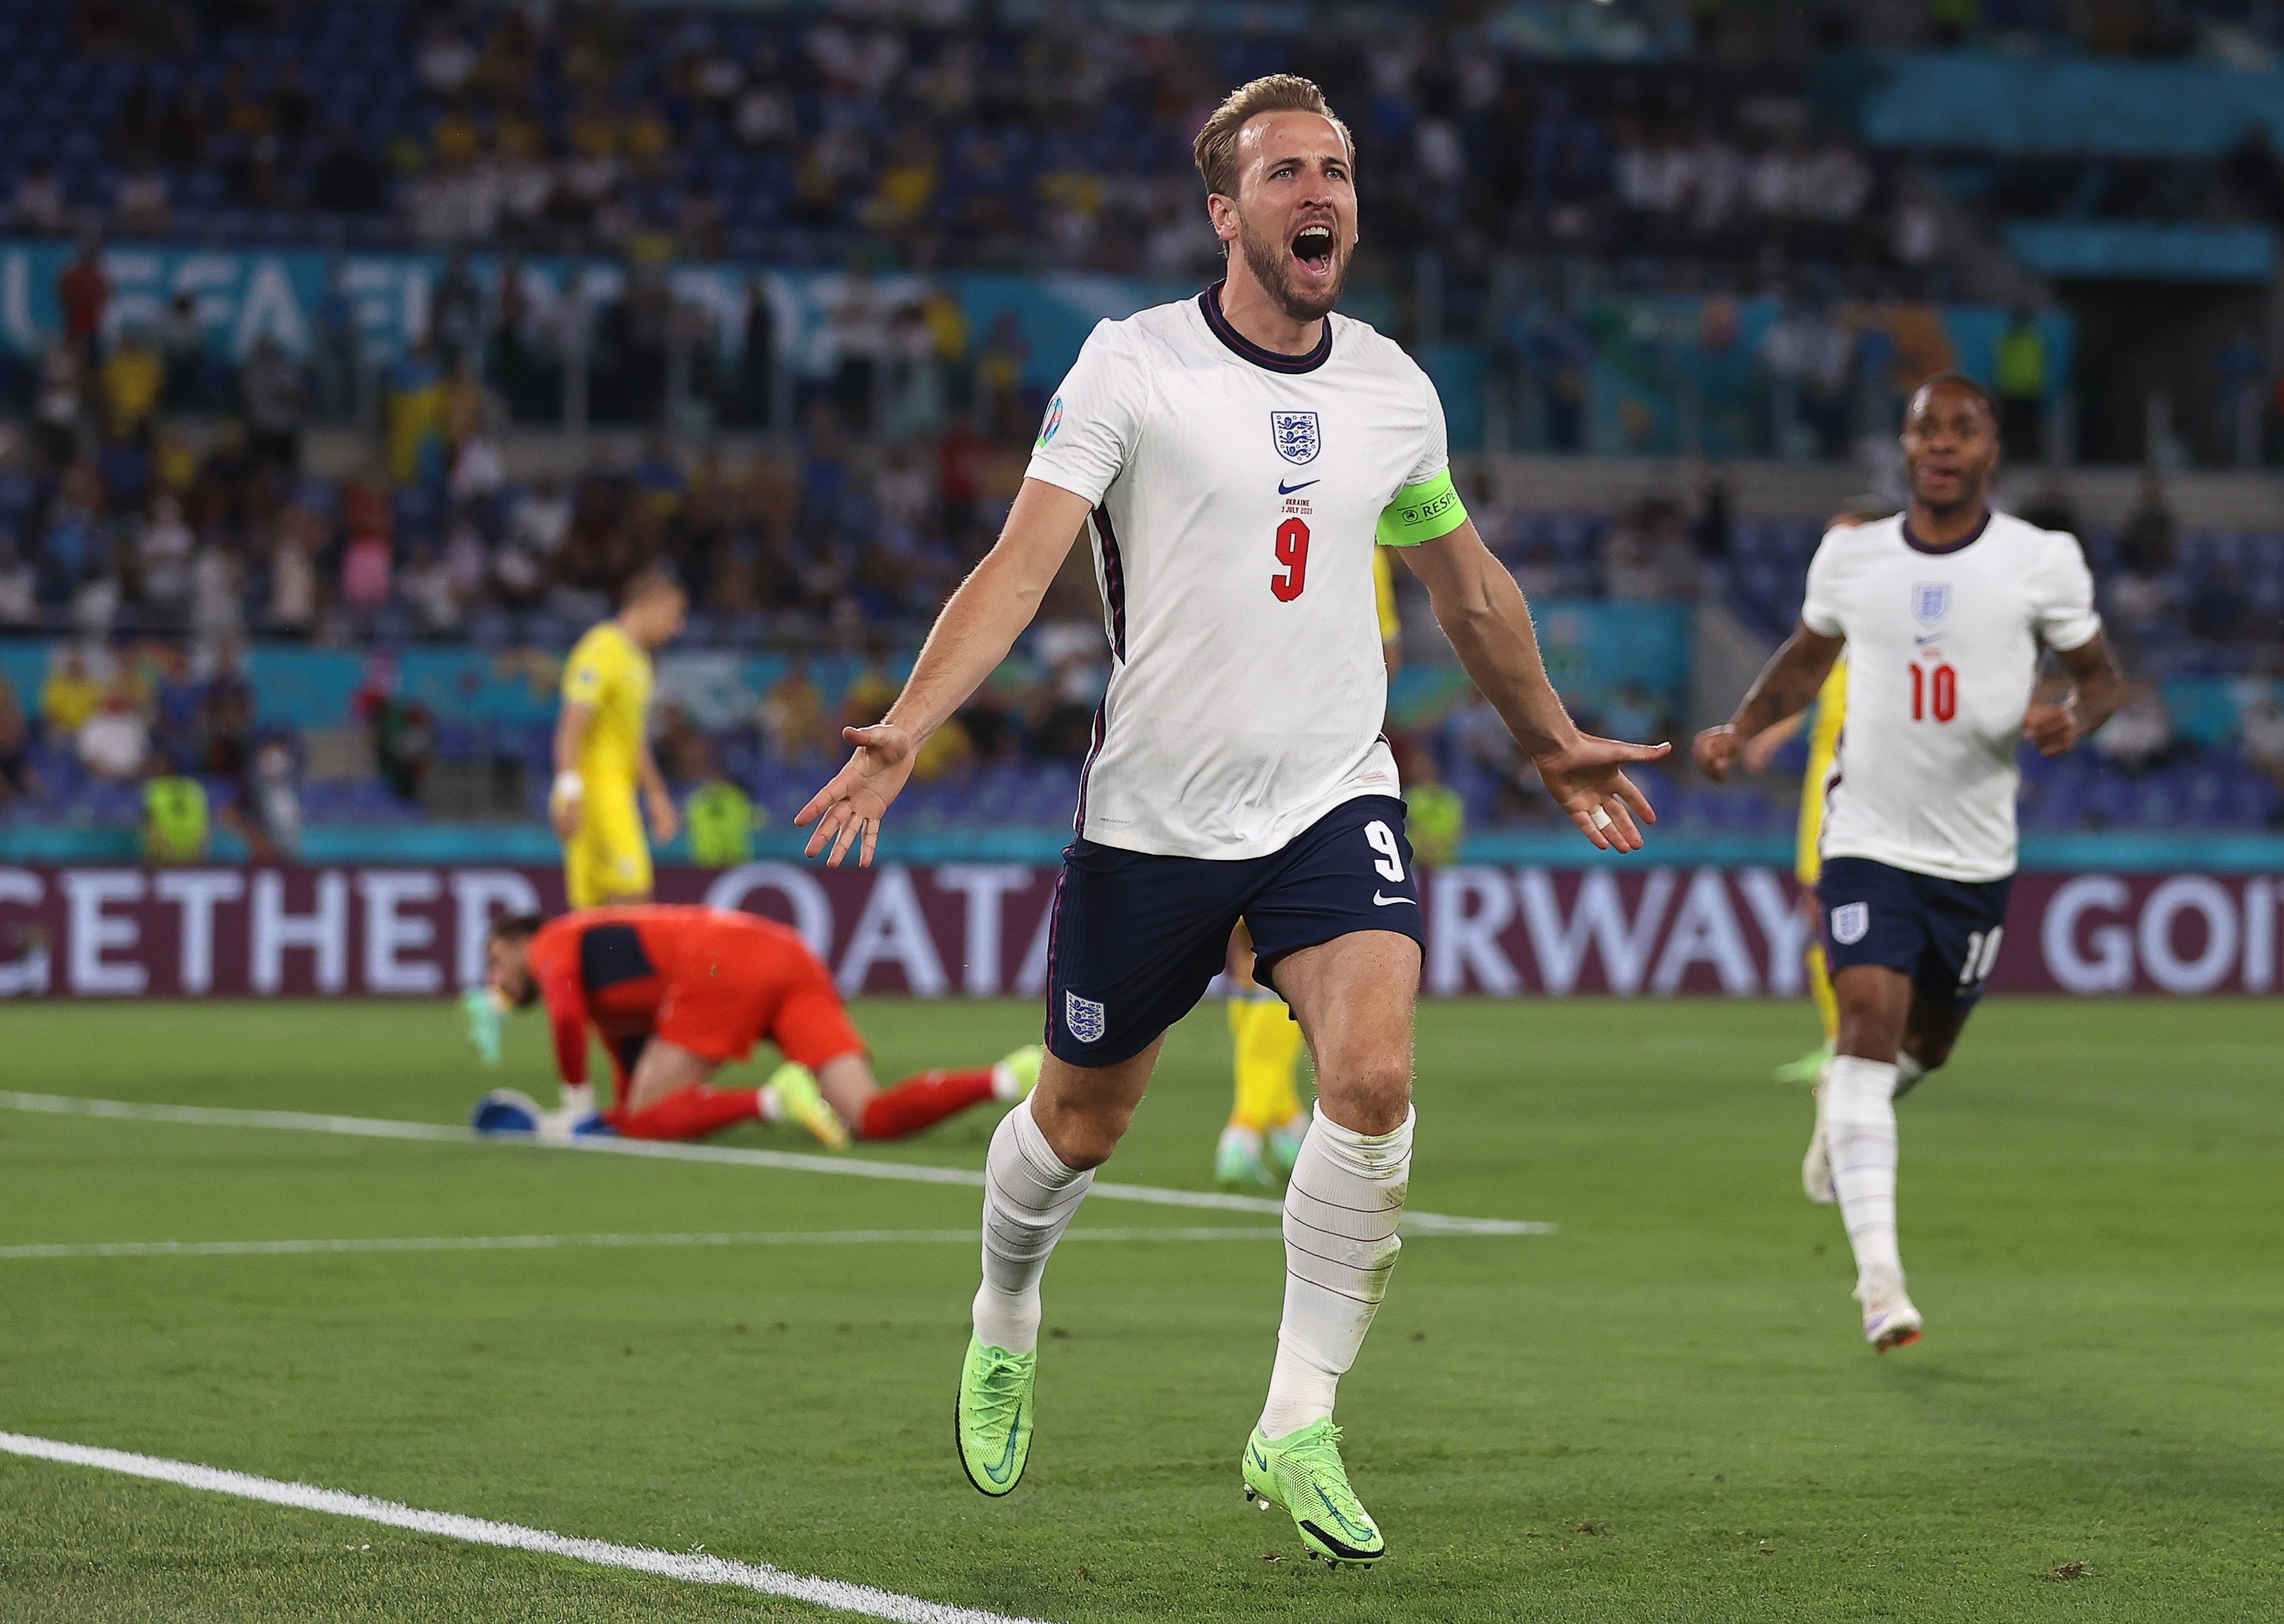 Golejada d'Anglaterra a Ucraïna per arribar a semifinals de l'Eurocopa (0-4)